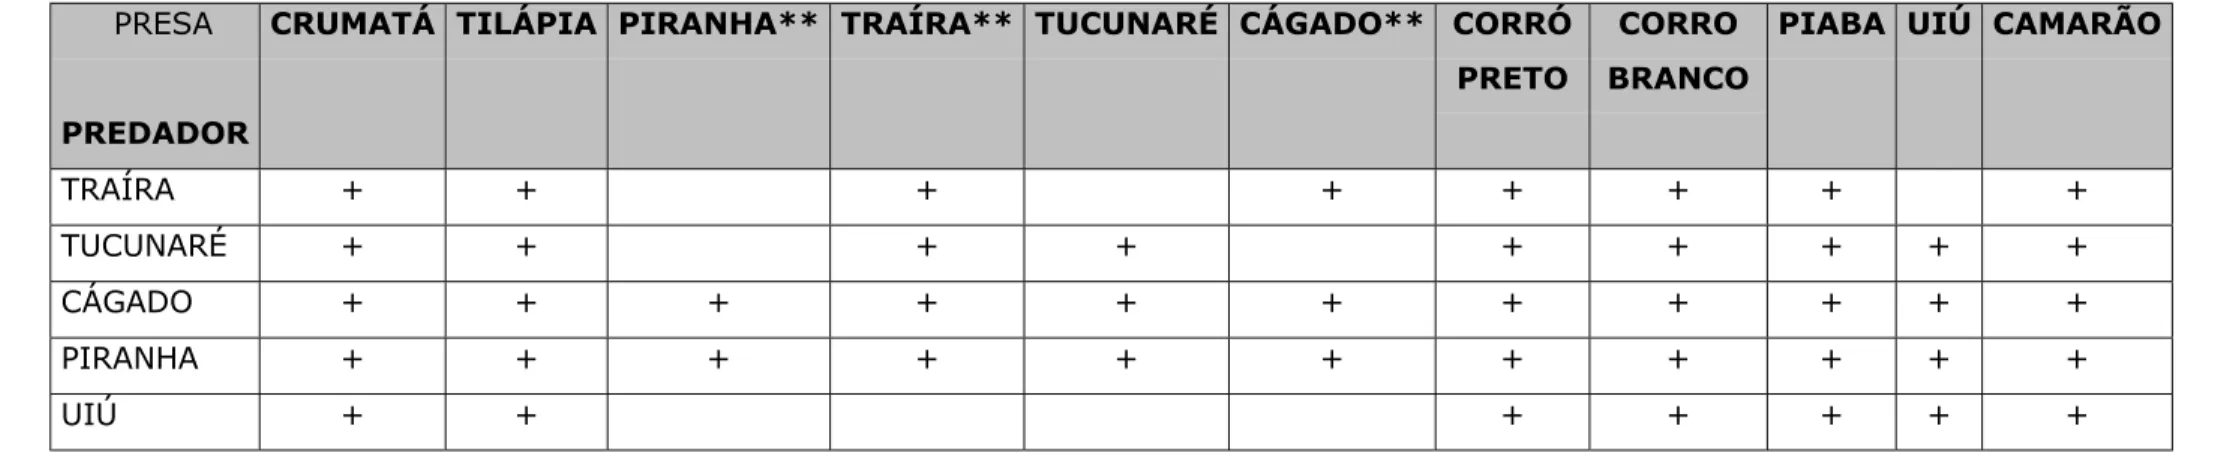 Tabela 5 - Relação presa/predador incluindo as espécies piscívoras, segundo as informações dos pescadores.